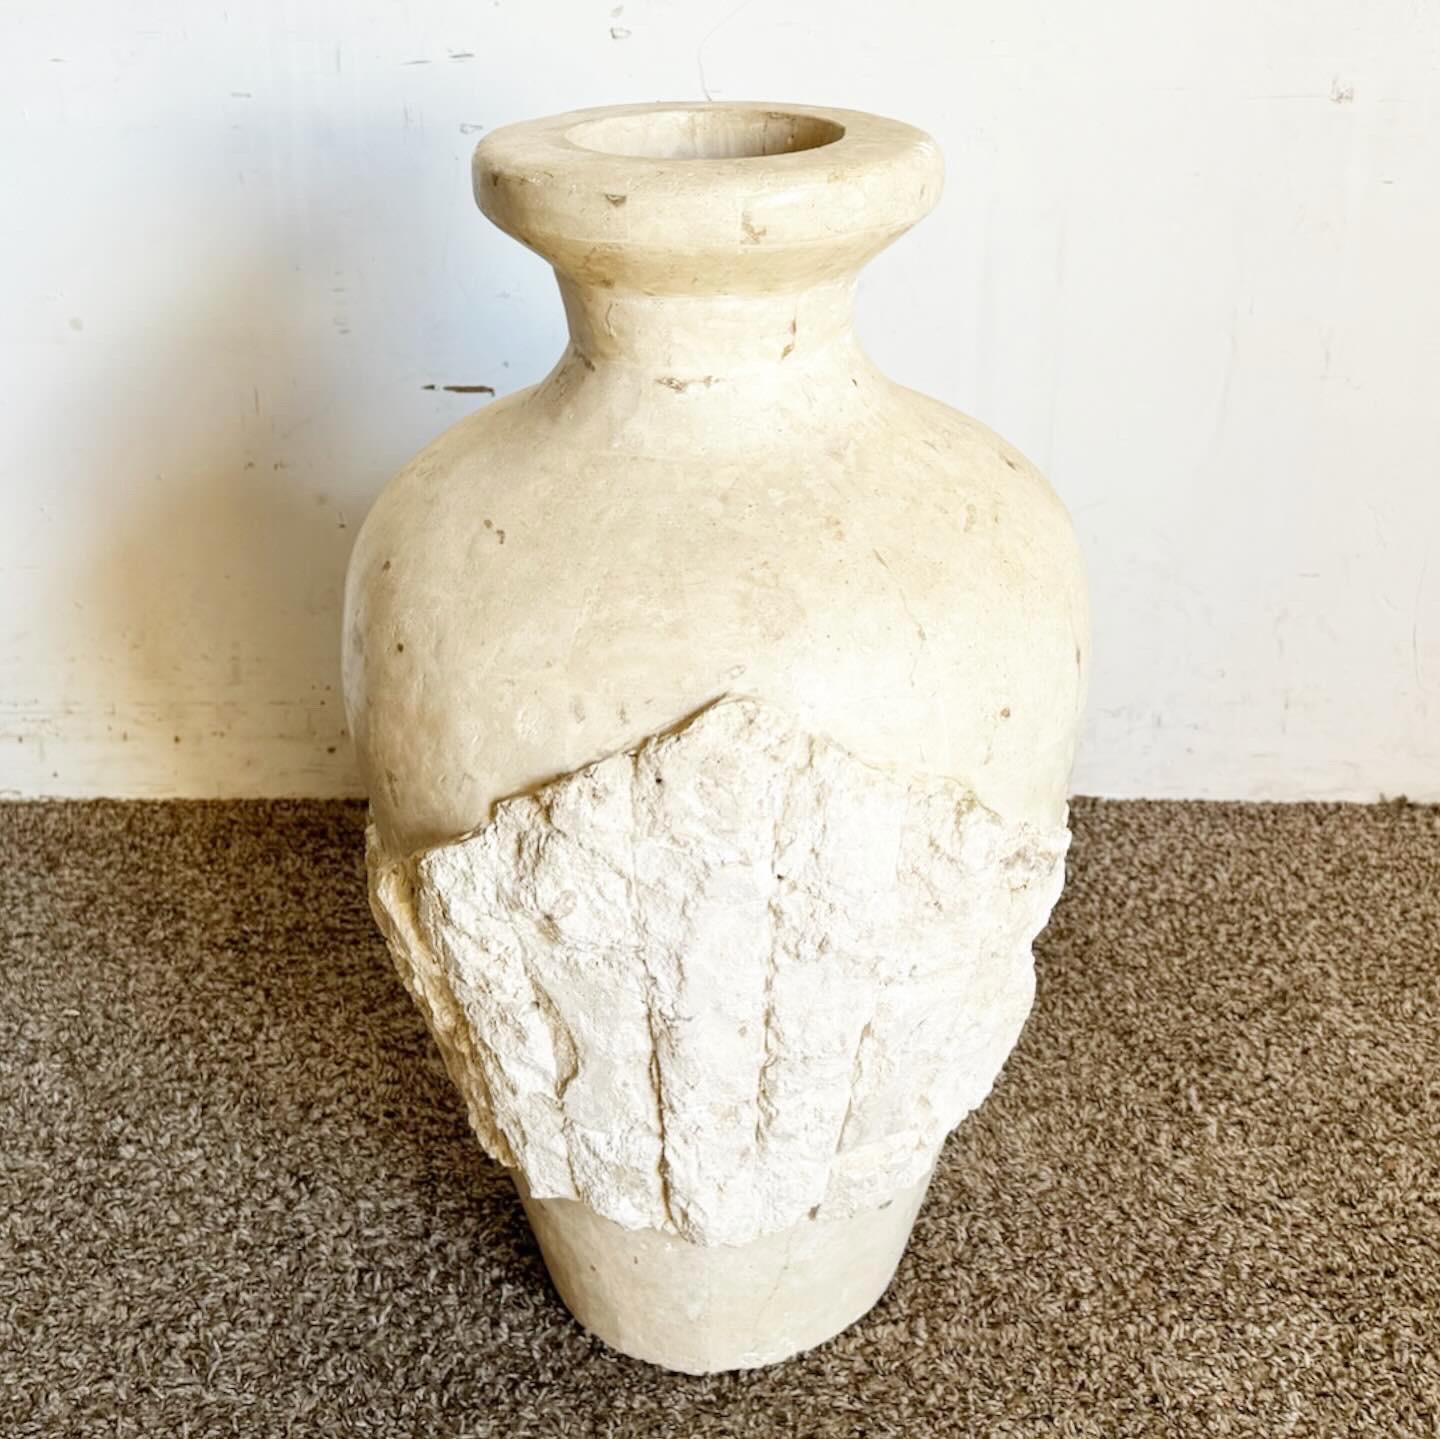 Verwandeln Sie Ihren Raum mit der Postmodern Tessellated Raw and Polished Stone Floor Vase. Diese einzigartige Vase zeigt eine Mischung aus rohem und poliertem Stein, die einen atemberaubenden visuellen Kontrast schafft. Er eignet sich perfekt für